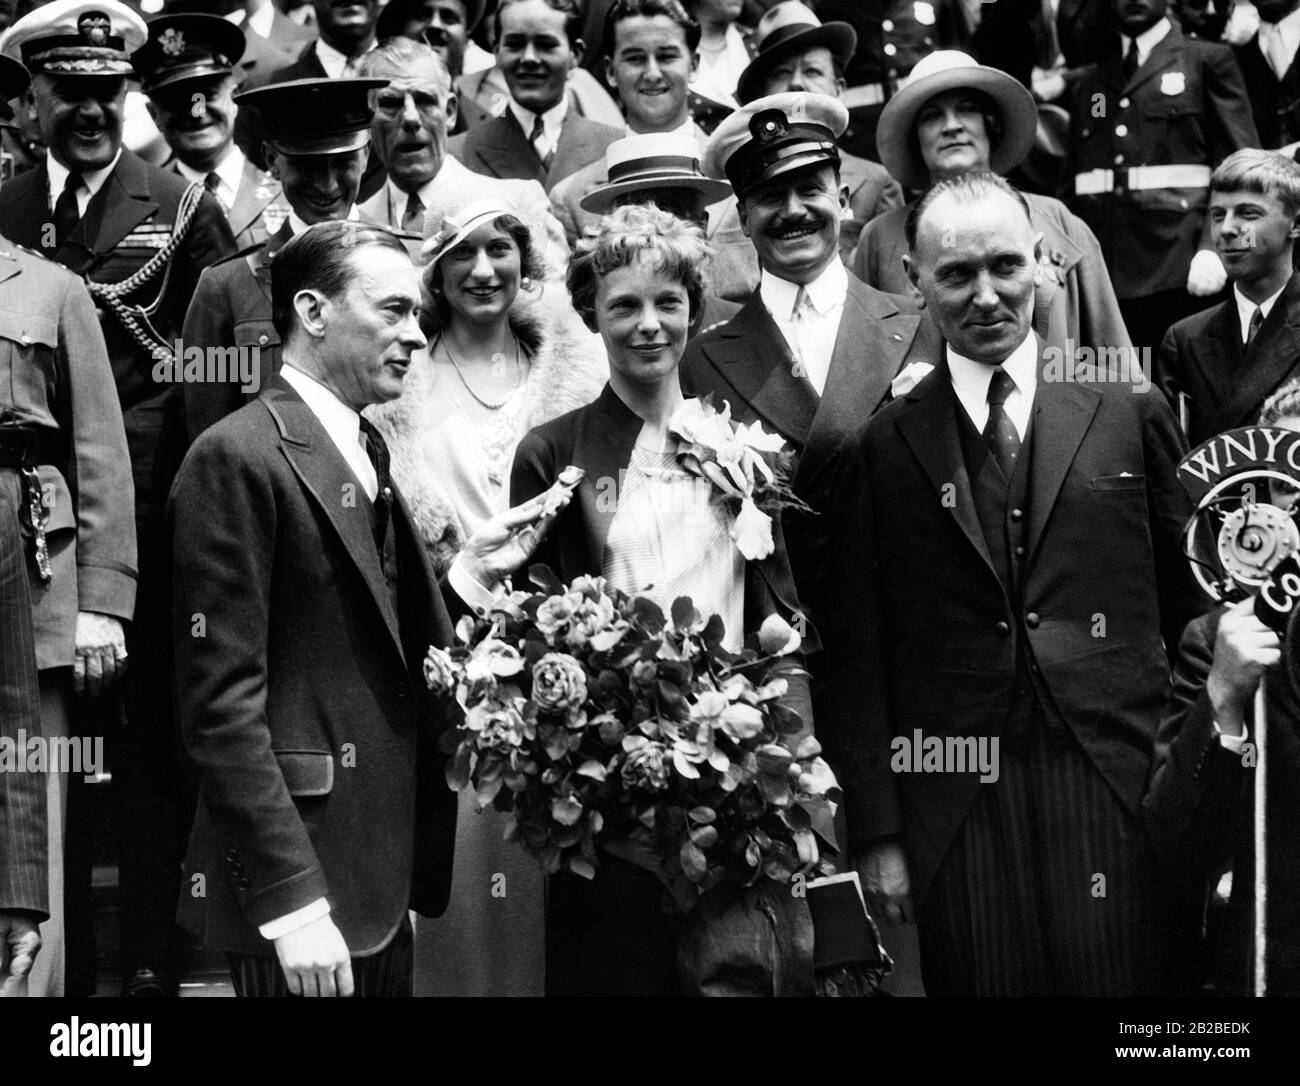 Amelia Earhart wird im Rathaus von New York von Bürgermeister James J. Walker (links) und dem irischen Gesandten Michael Macwhite begrüßt, nachdem sie 1932 von ihrem ersten Transatlantikflug zurückgekehrt war. Stockfoto